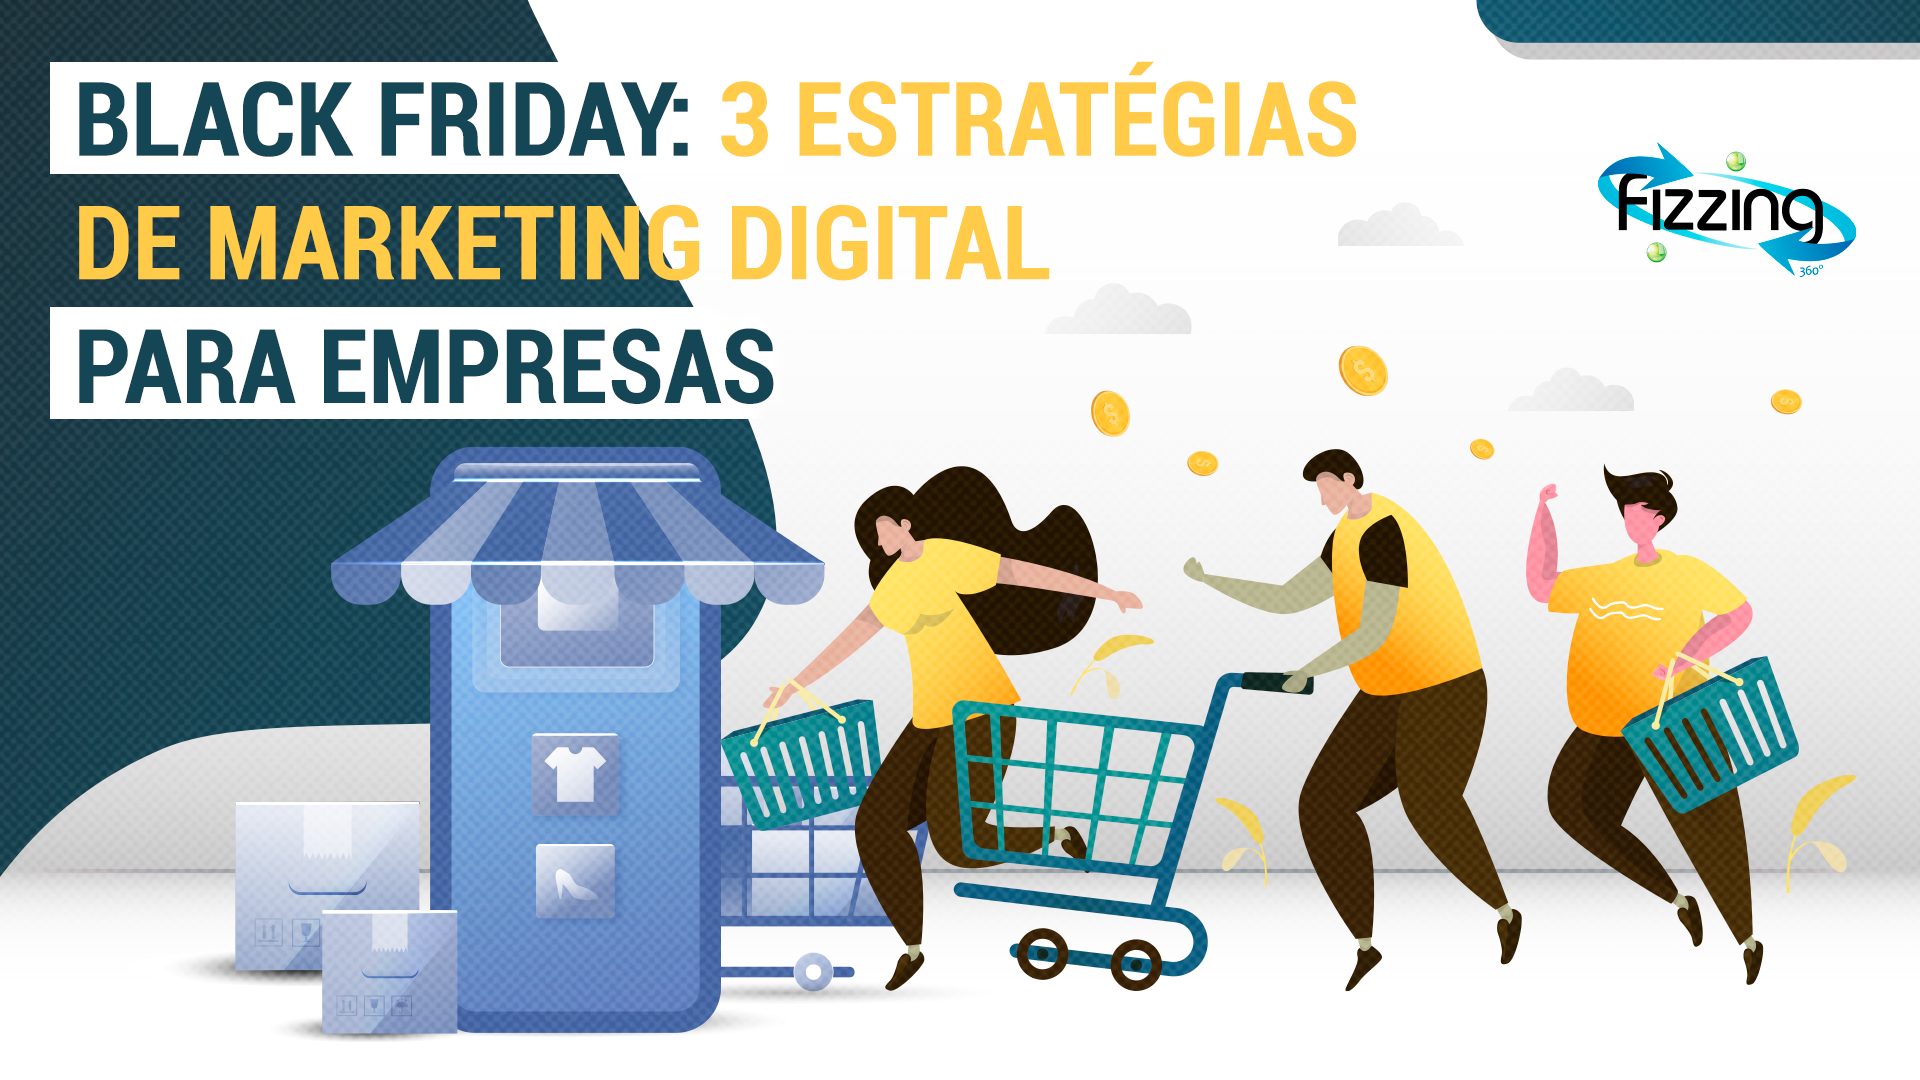 Estratégias de marketing digital na Black Friday | FIZZING 360º